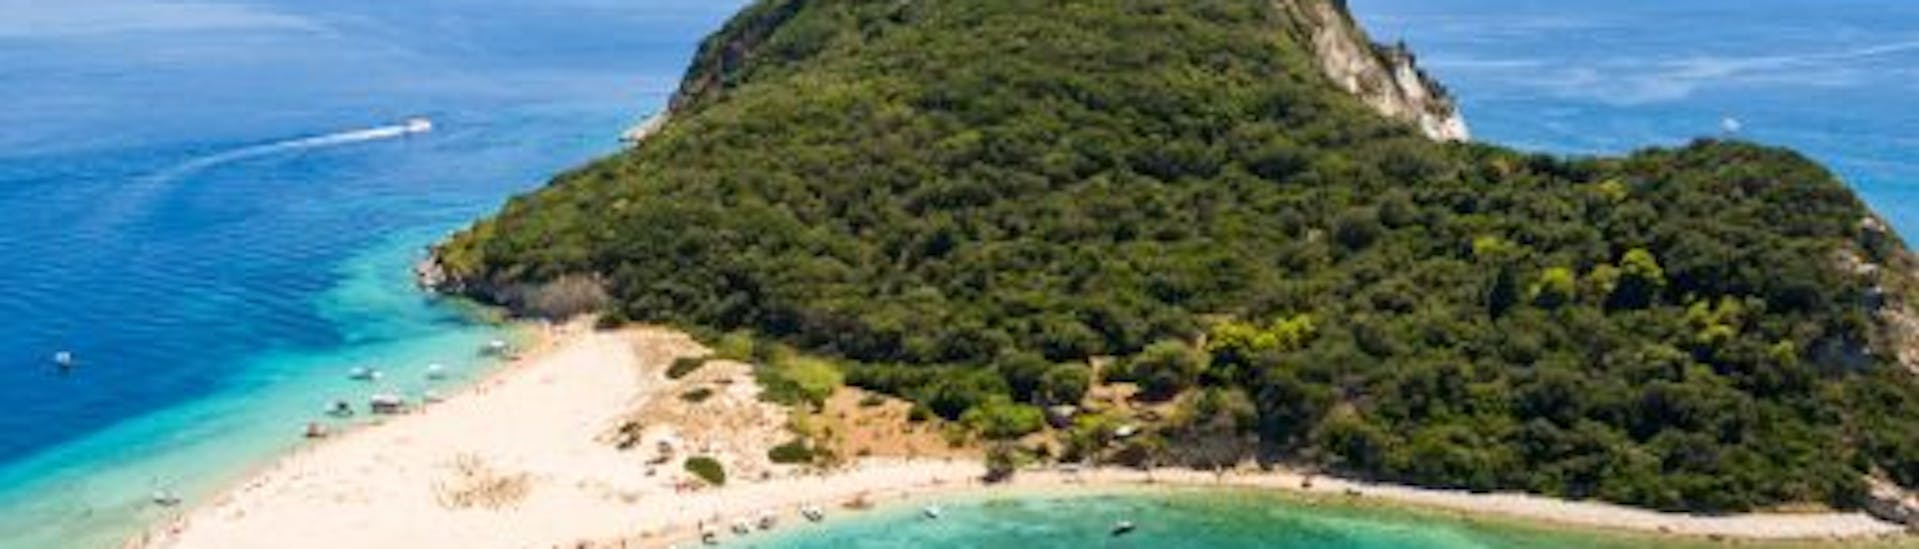 Gita in barca da Agios Sostis a Agios Sostis con osservazione della fauna selvatica e visita turistica.